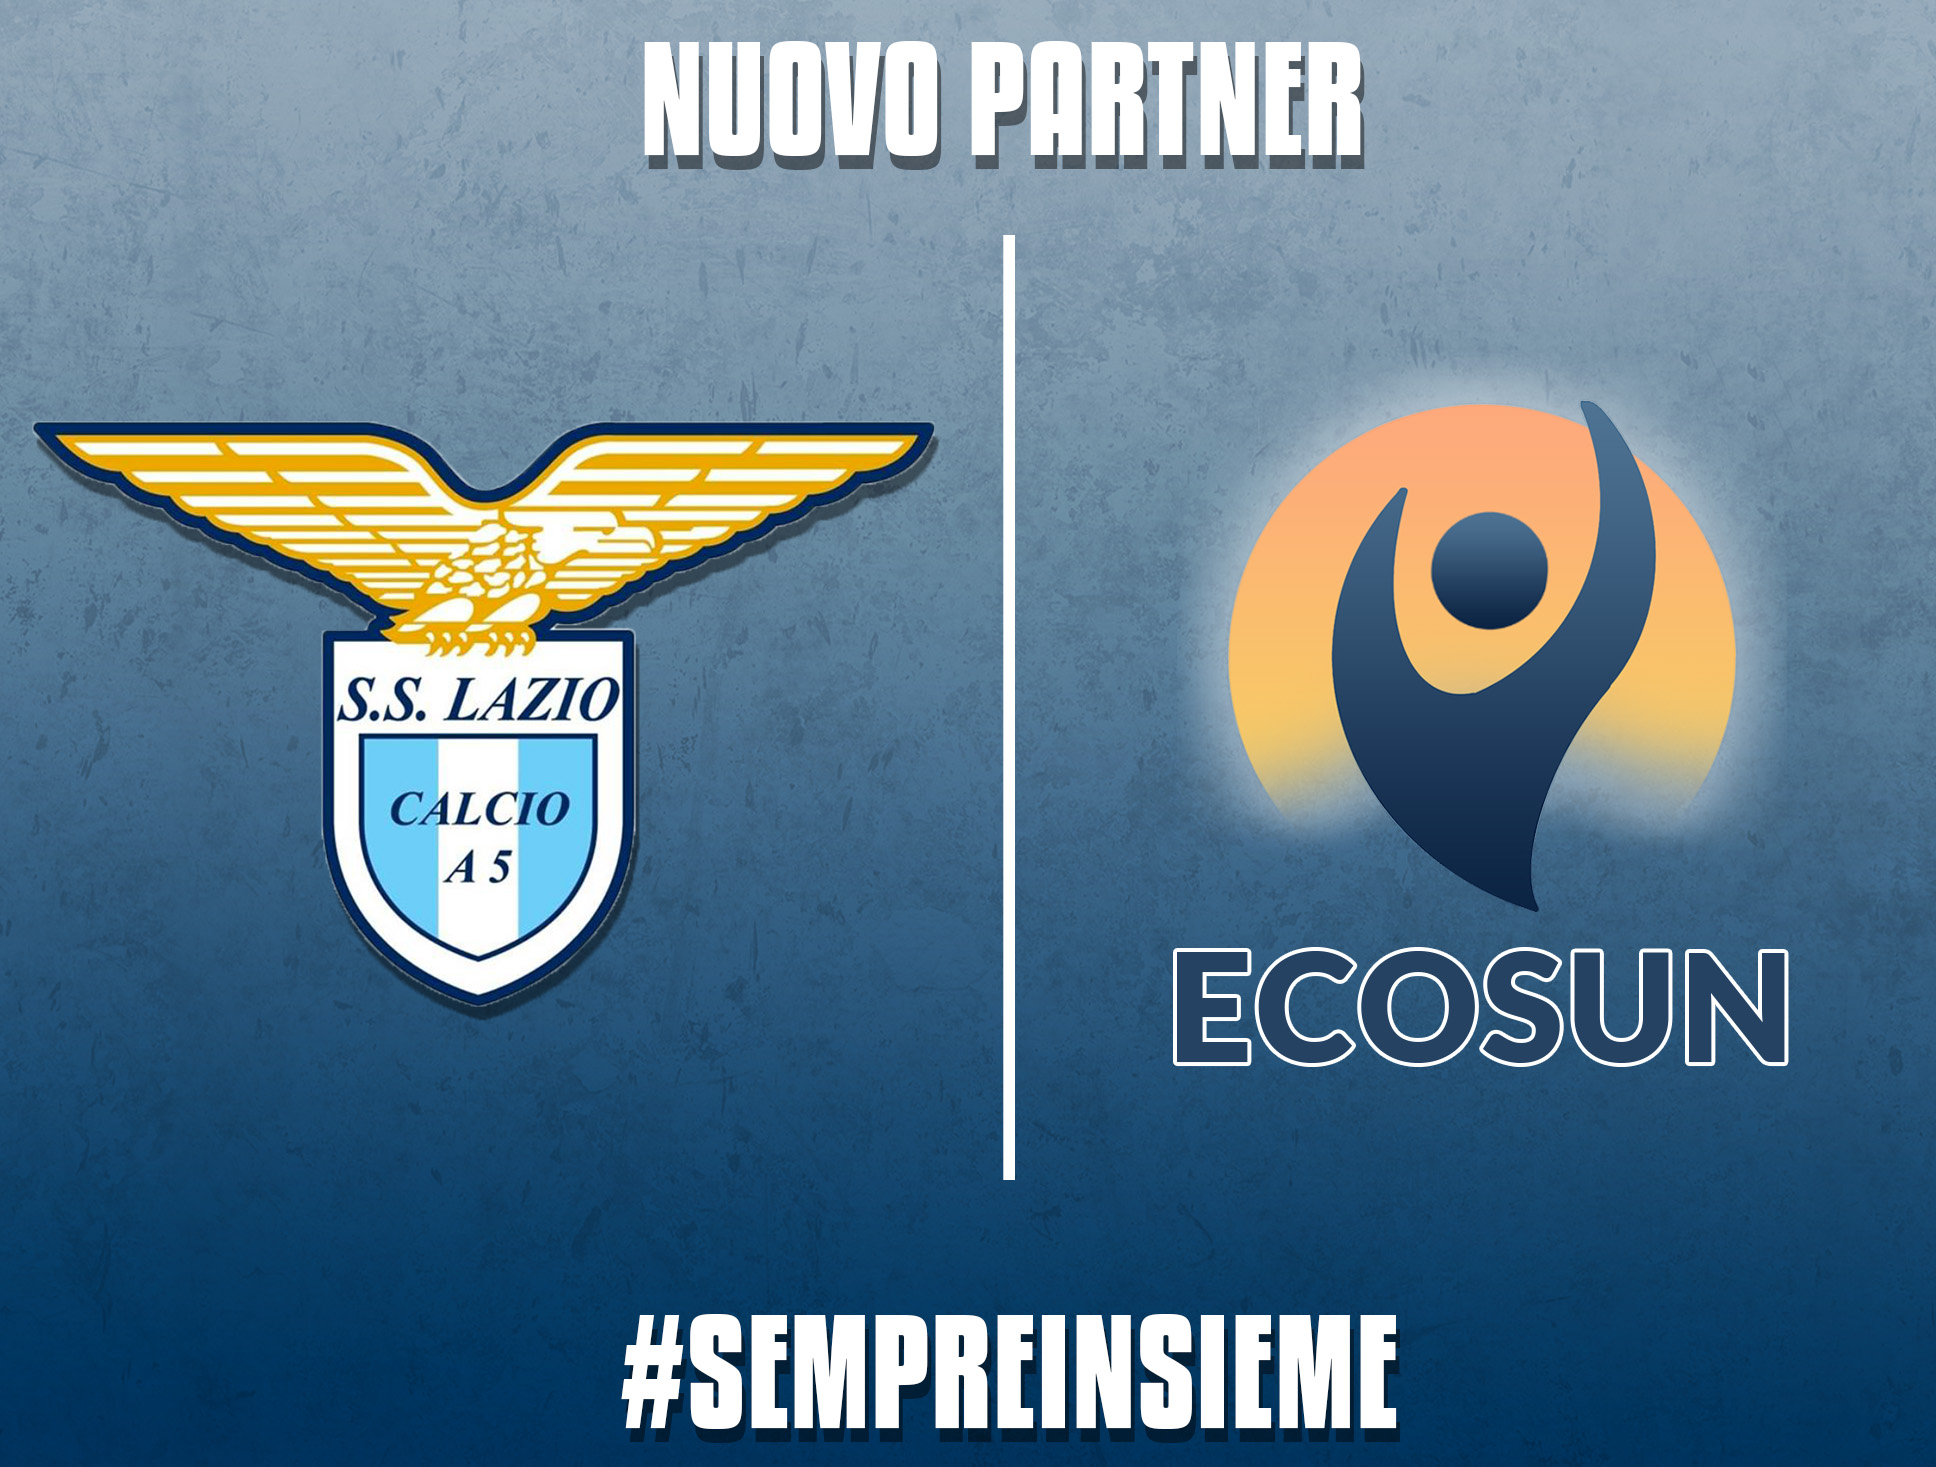 Ecosun nuovo partner della S.S. Lazio Calcio a 5